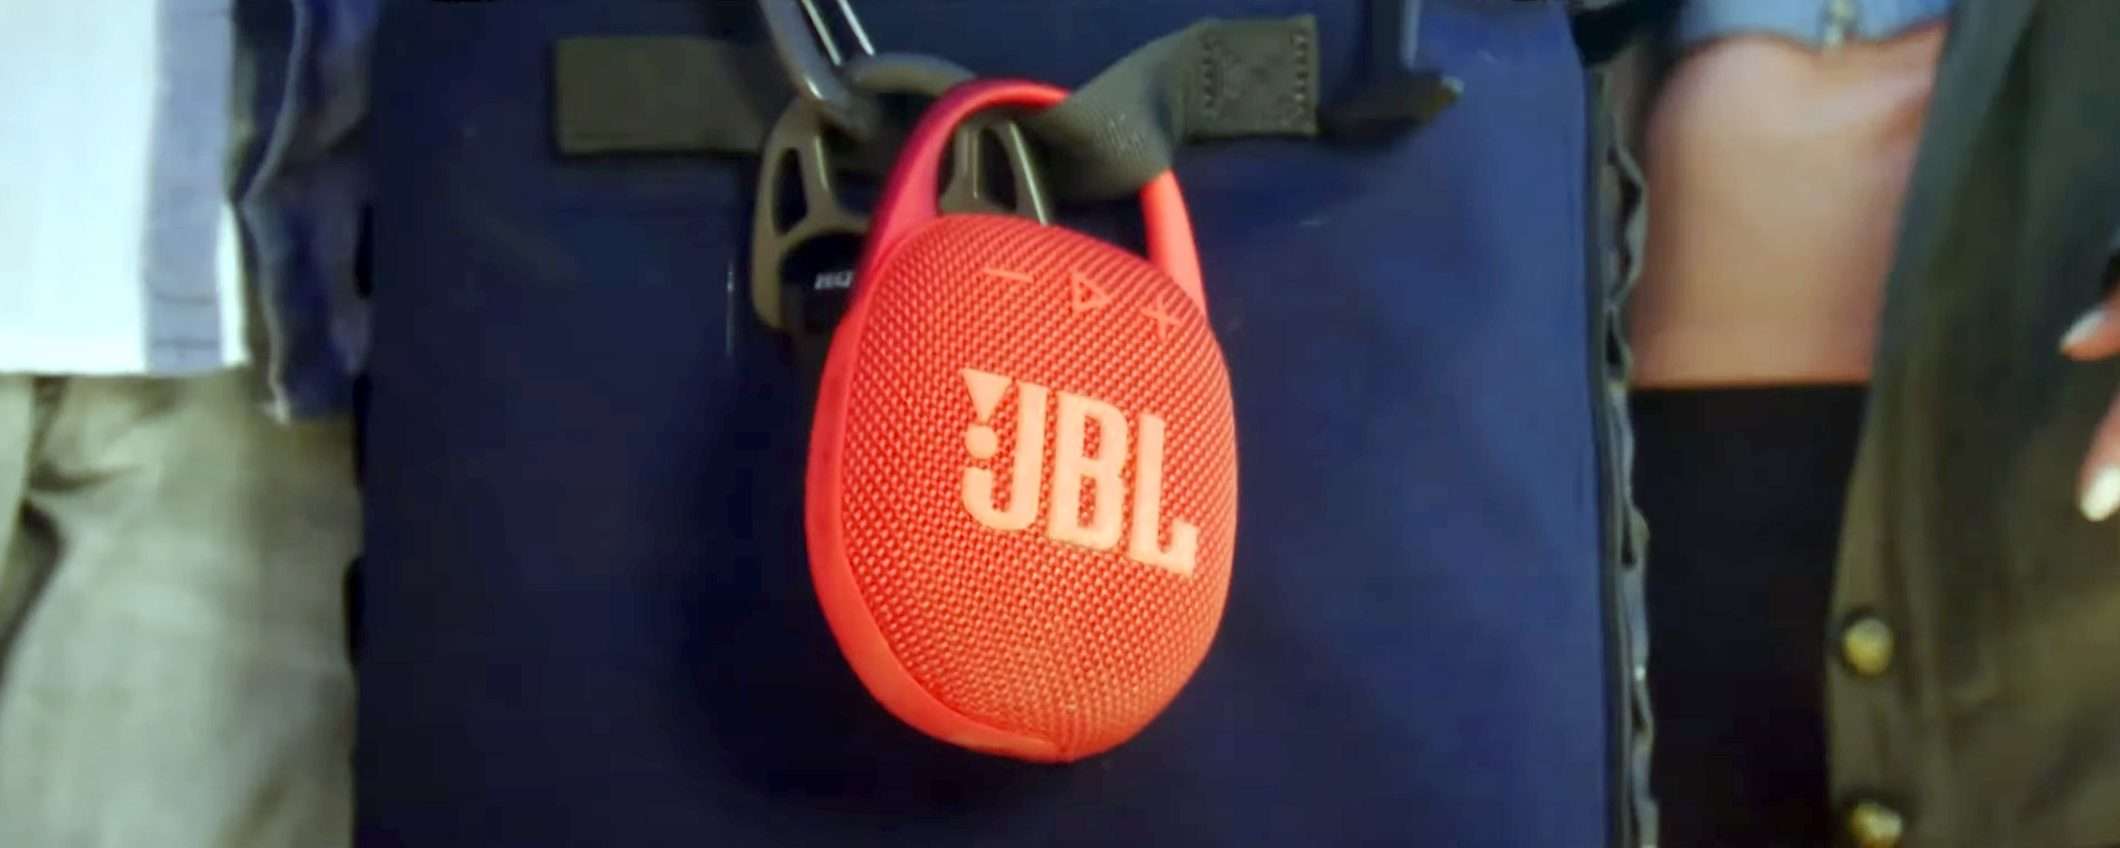 JBL Clip 5 è già in sconto: lo speaker BT per l'estate